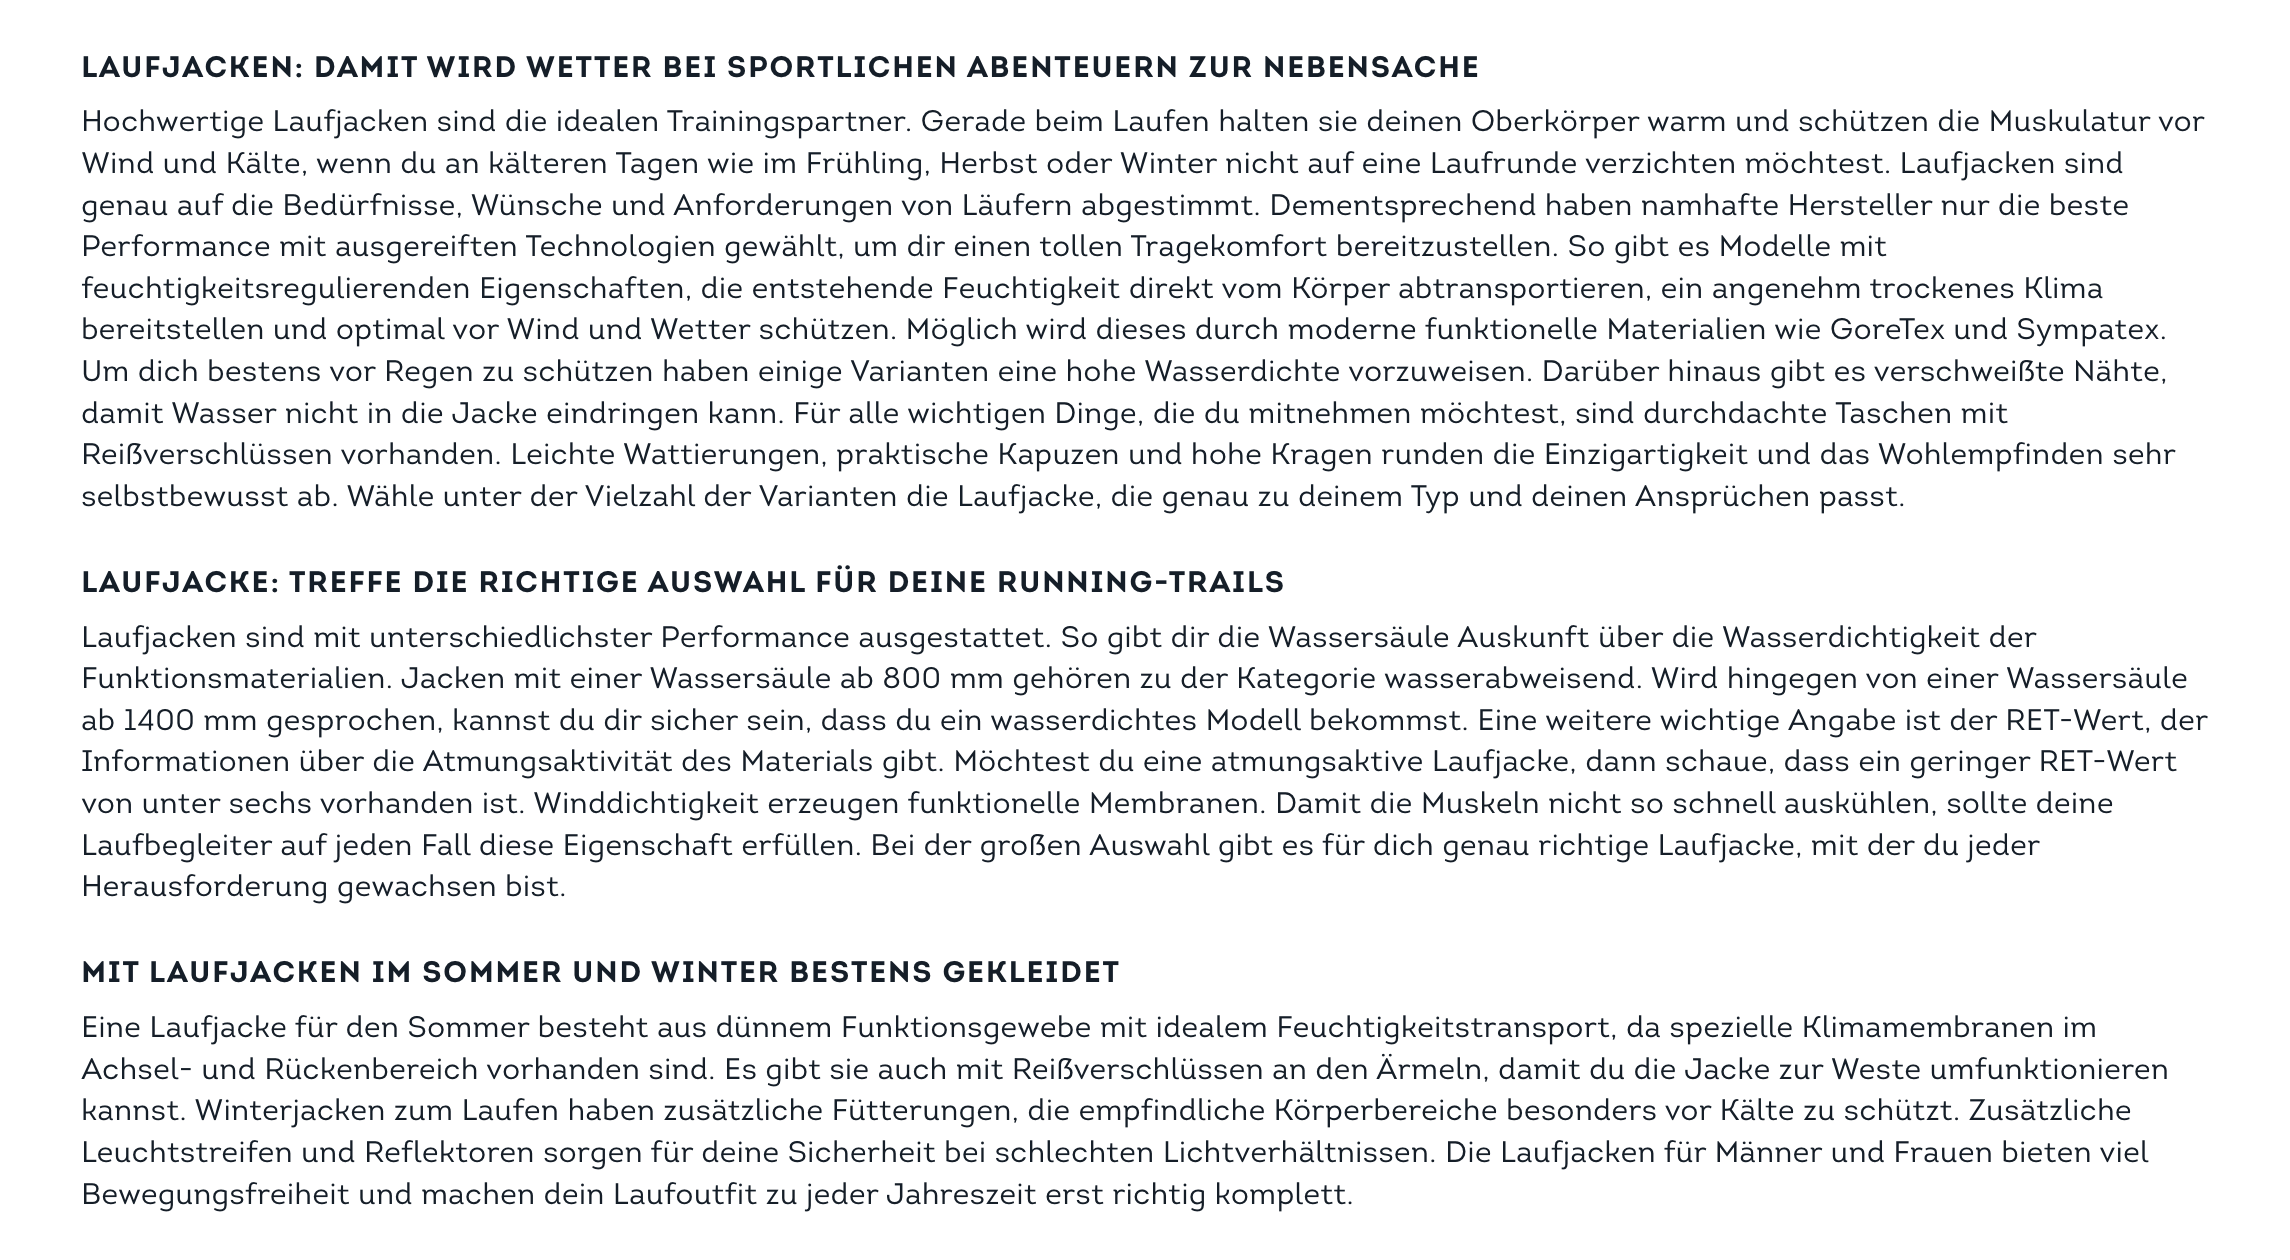 Der Kategorienseitentext über Laufjacken auf https://www.sportscheck.com/laufjacken/.